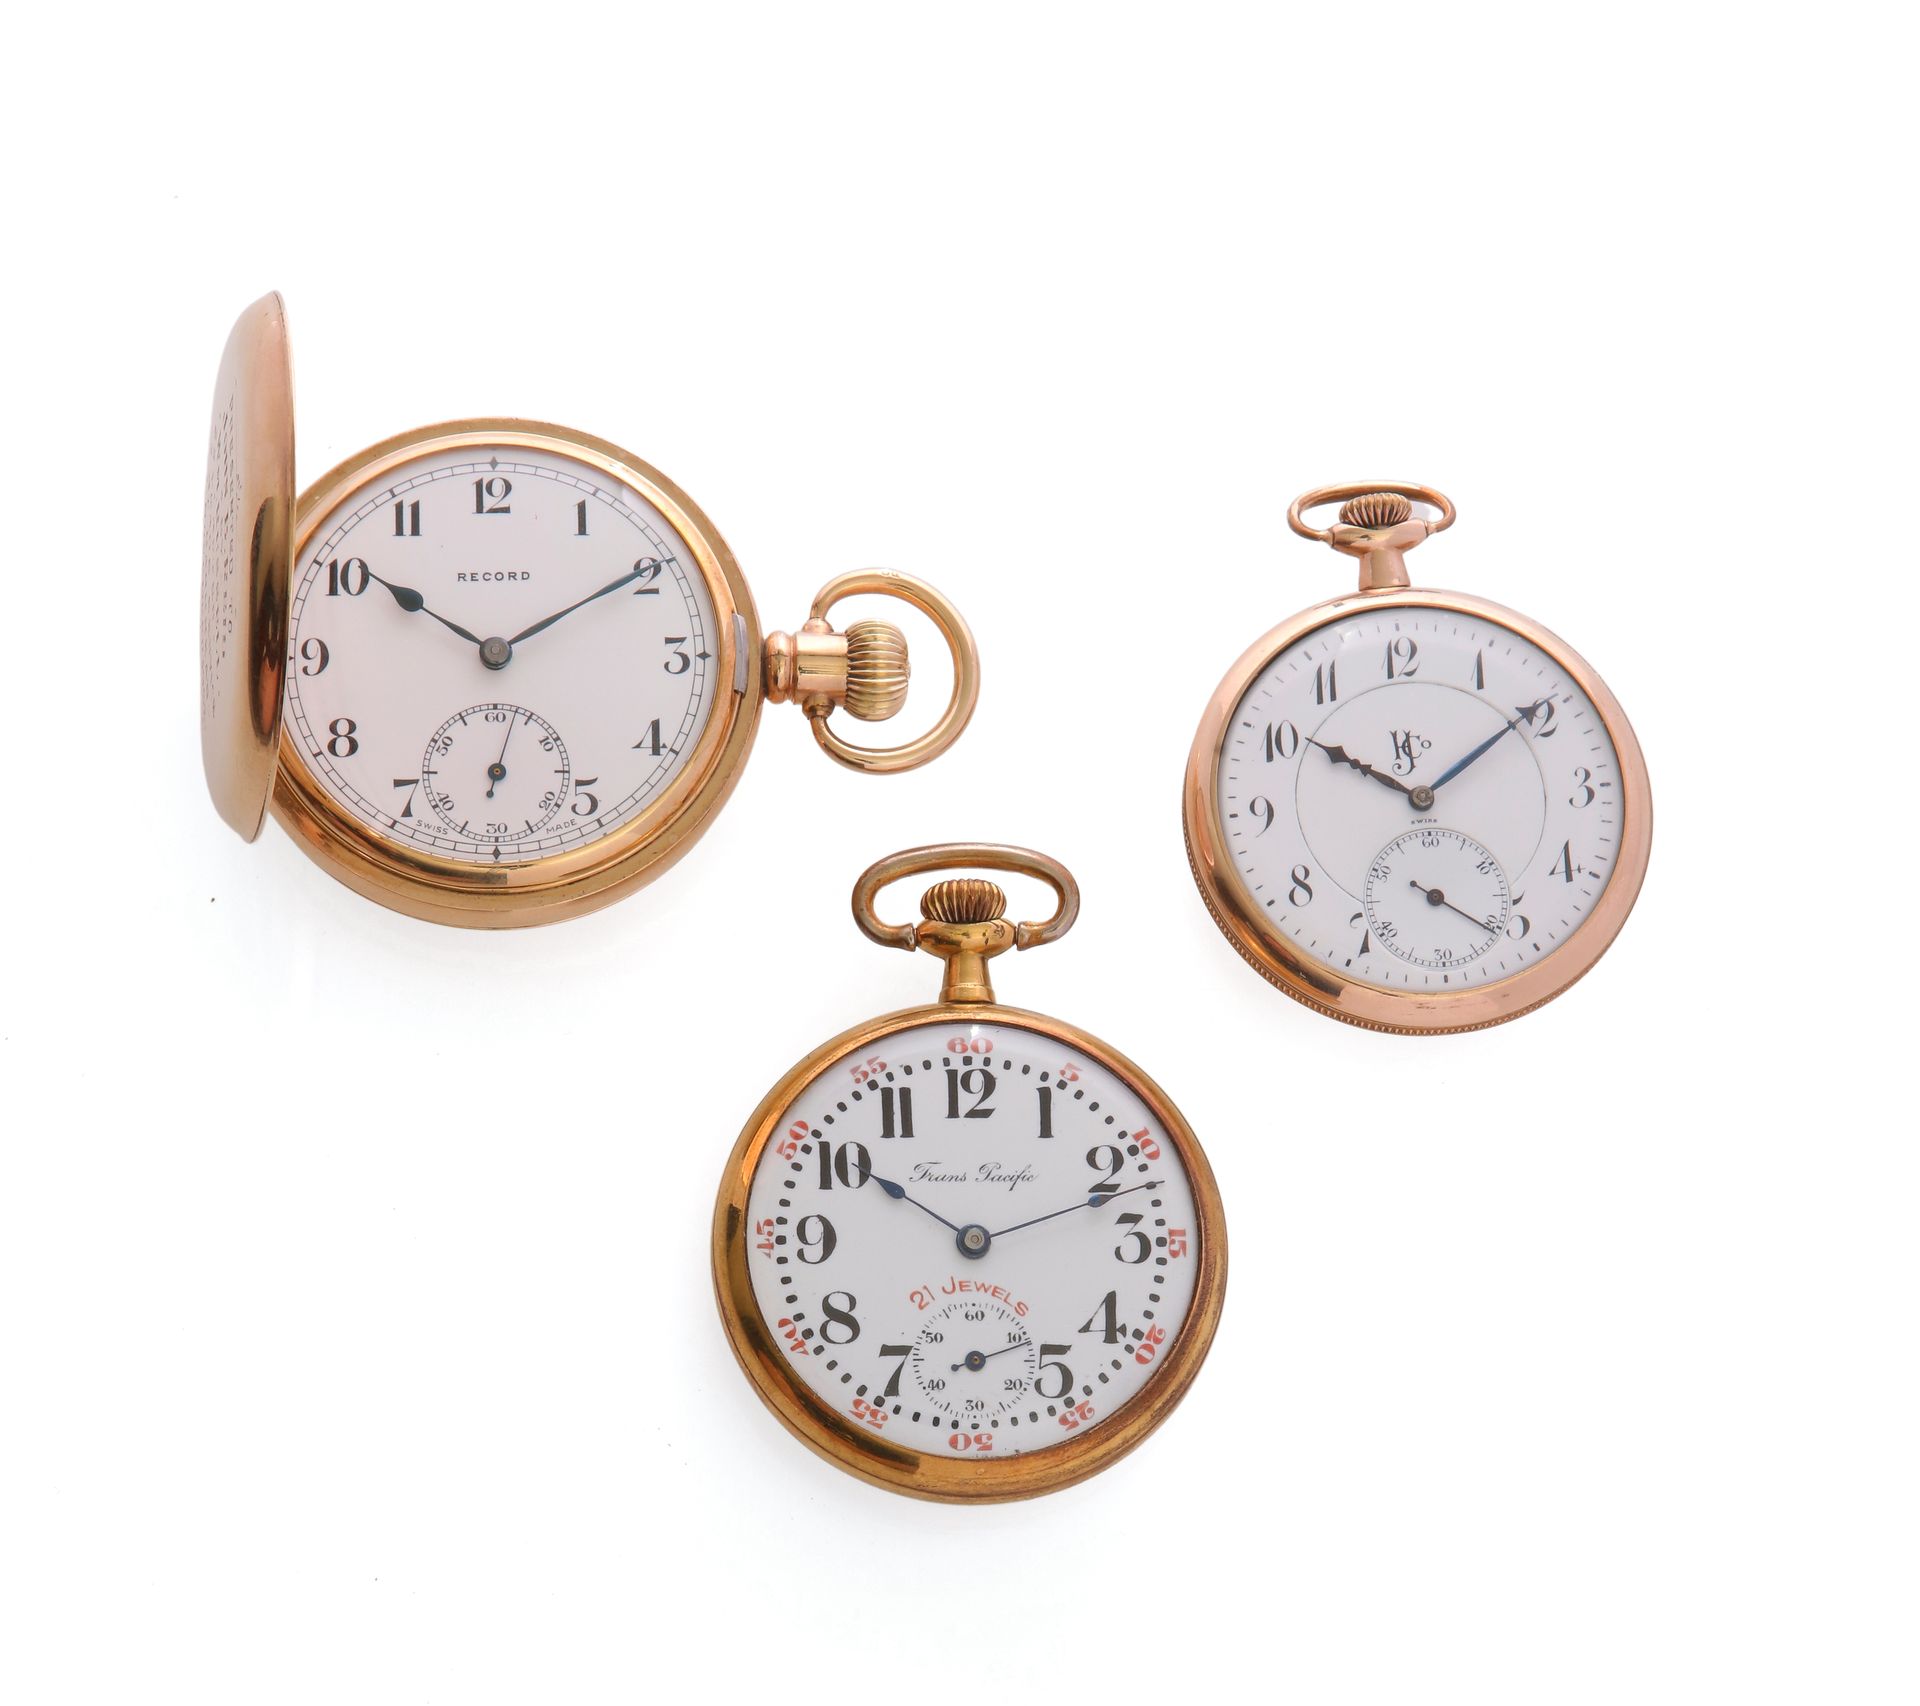 Null Record / Trans Pacific / HJCO
Serie di 3 orologi da tasca placcati in oro, &hellip;